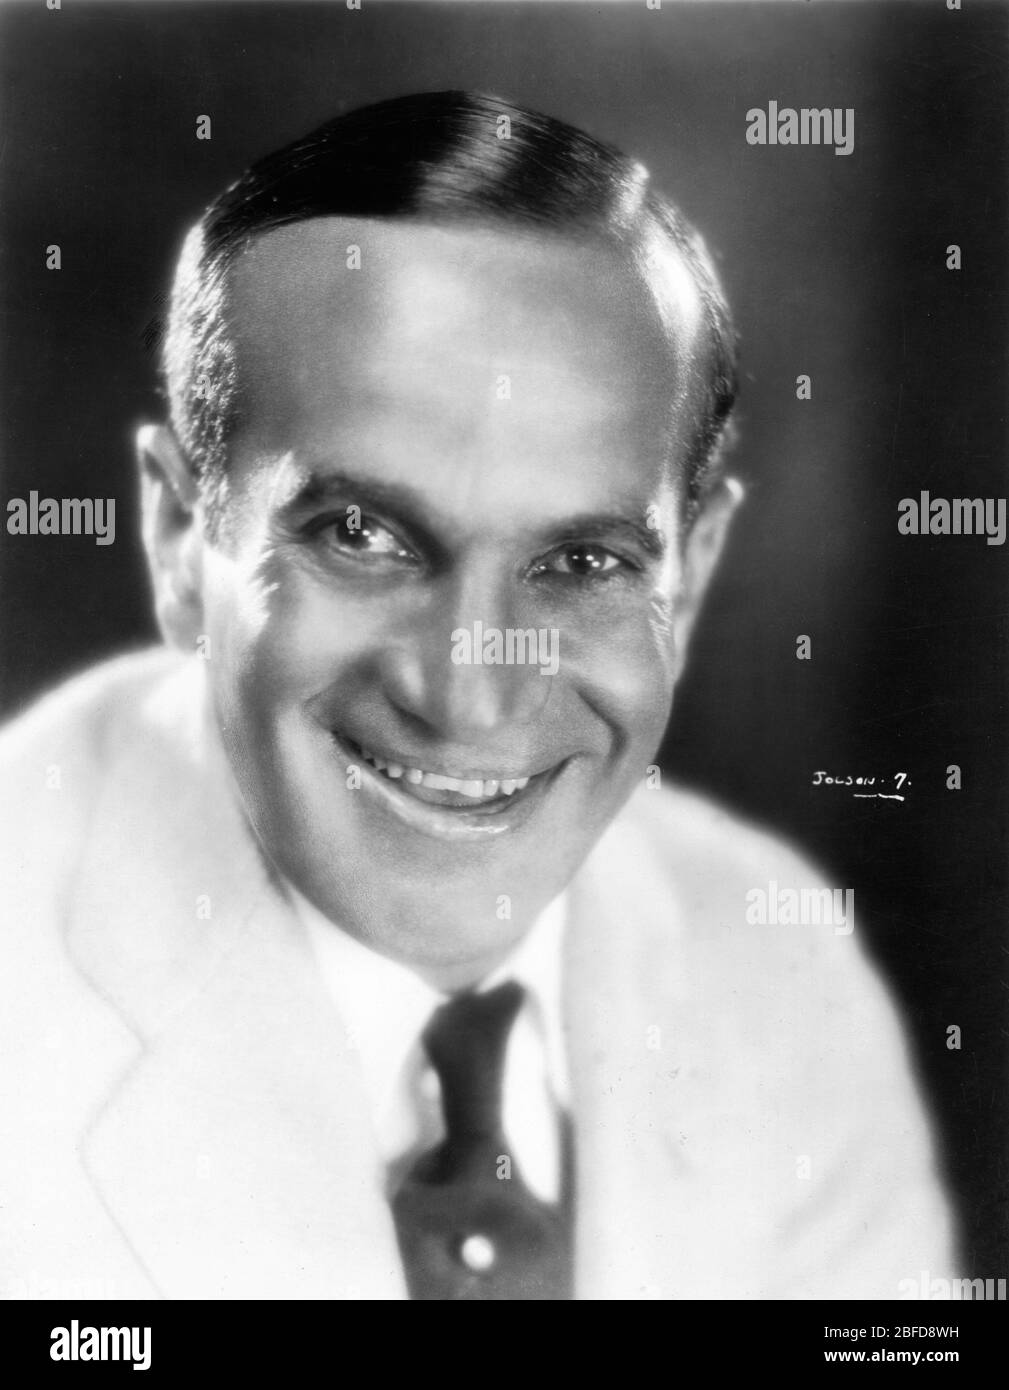 AL JOLSON Publicity Portrait für DEN JAZZSÄNGER 1927 Regisseur ALAN CROSLAND spielt Samson Raphaelson Warner Bros. Stockfoto